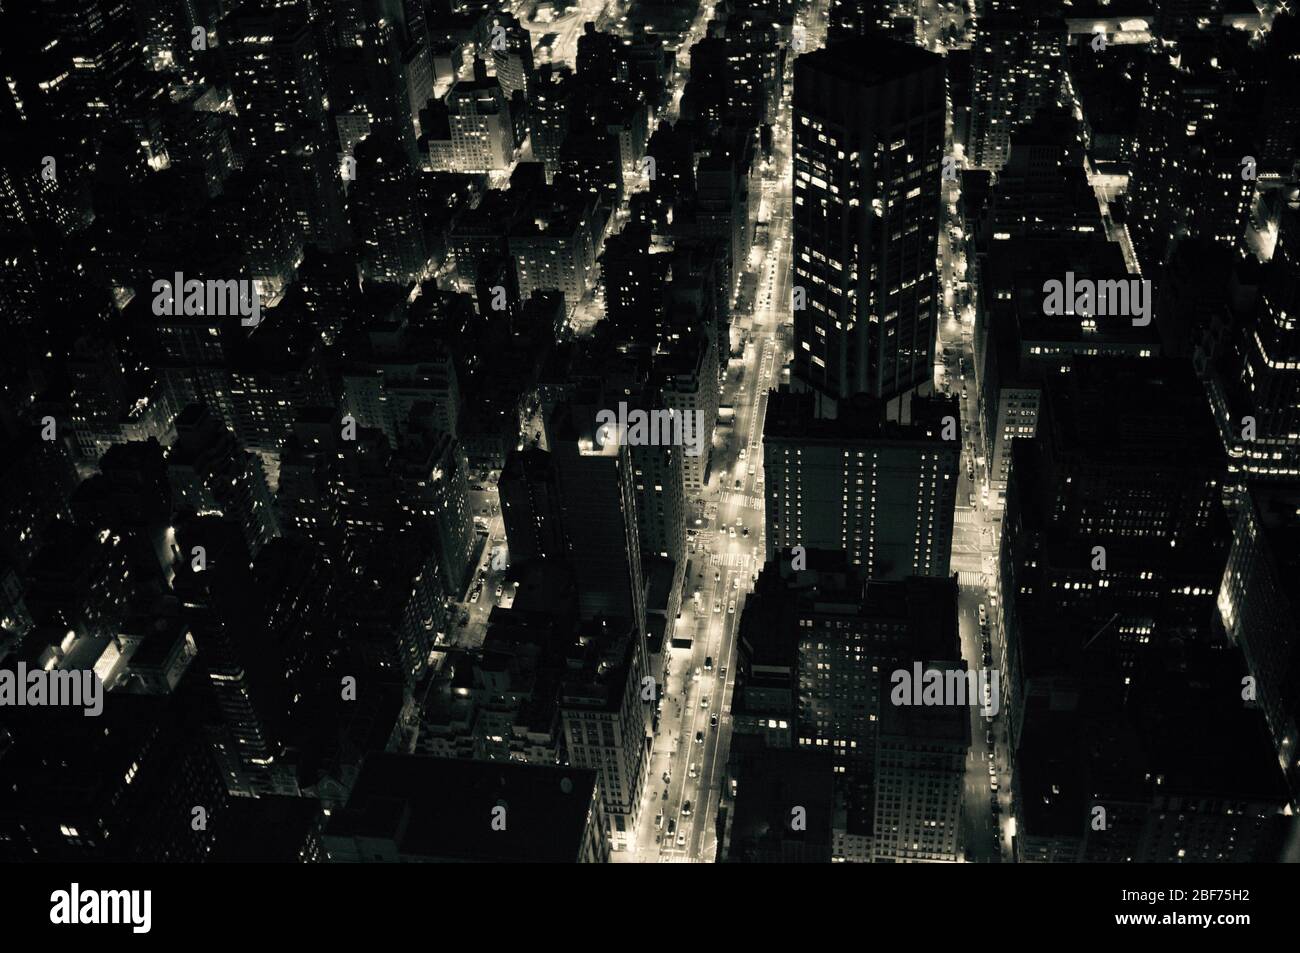 Ein sepiafarbtes Bild. Blick bei Nacht über New York, vom Empire State Building aus gesehen. Stockfoto